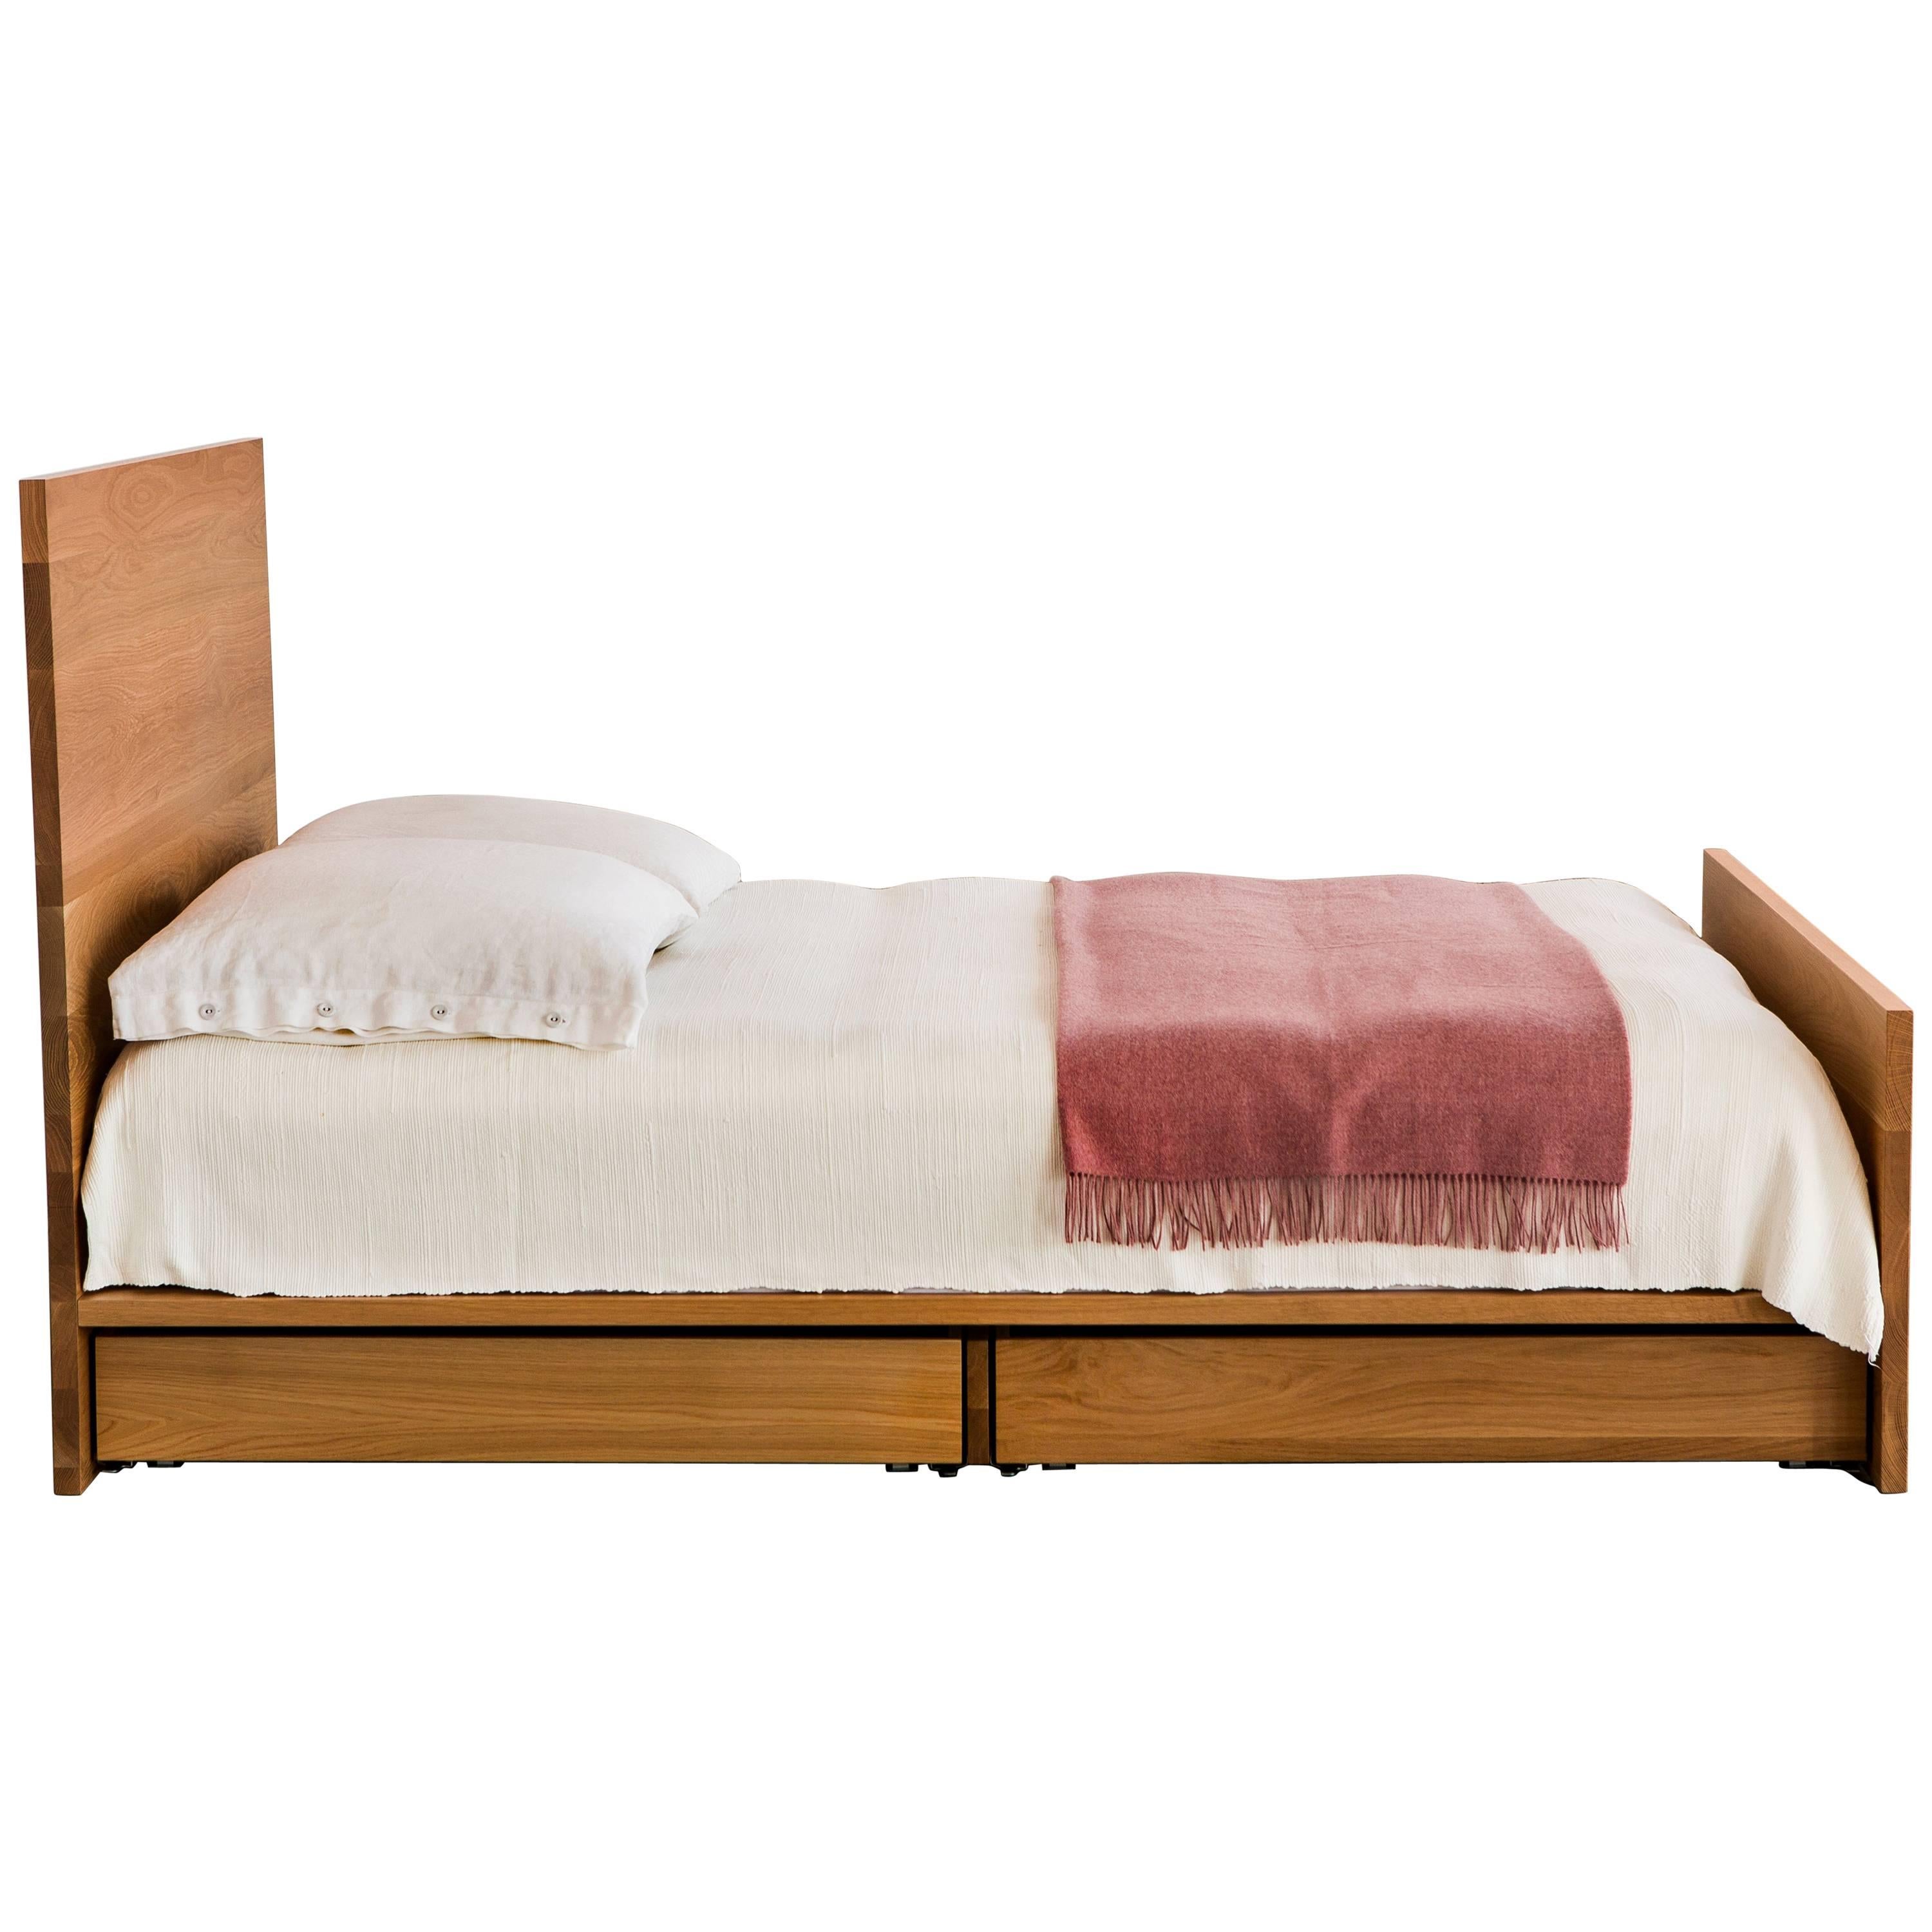 Le lit AB6, un lit plate-forme discret, offre un rangement discret sous (en option) une élégante étendue de bois dur massif. 

Représenté en chêne blanc massif avec des accents de bronze. 

Dimensions : 60